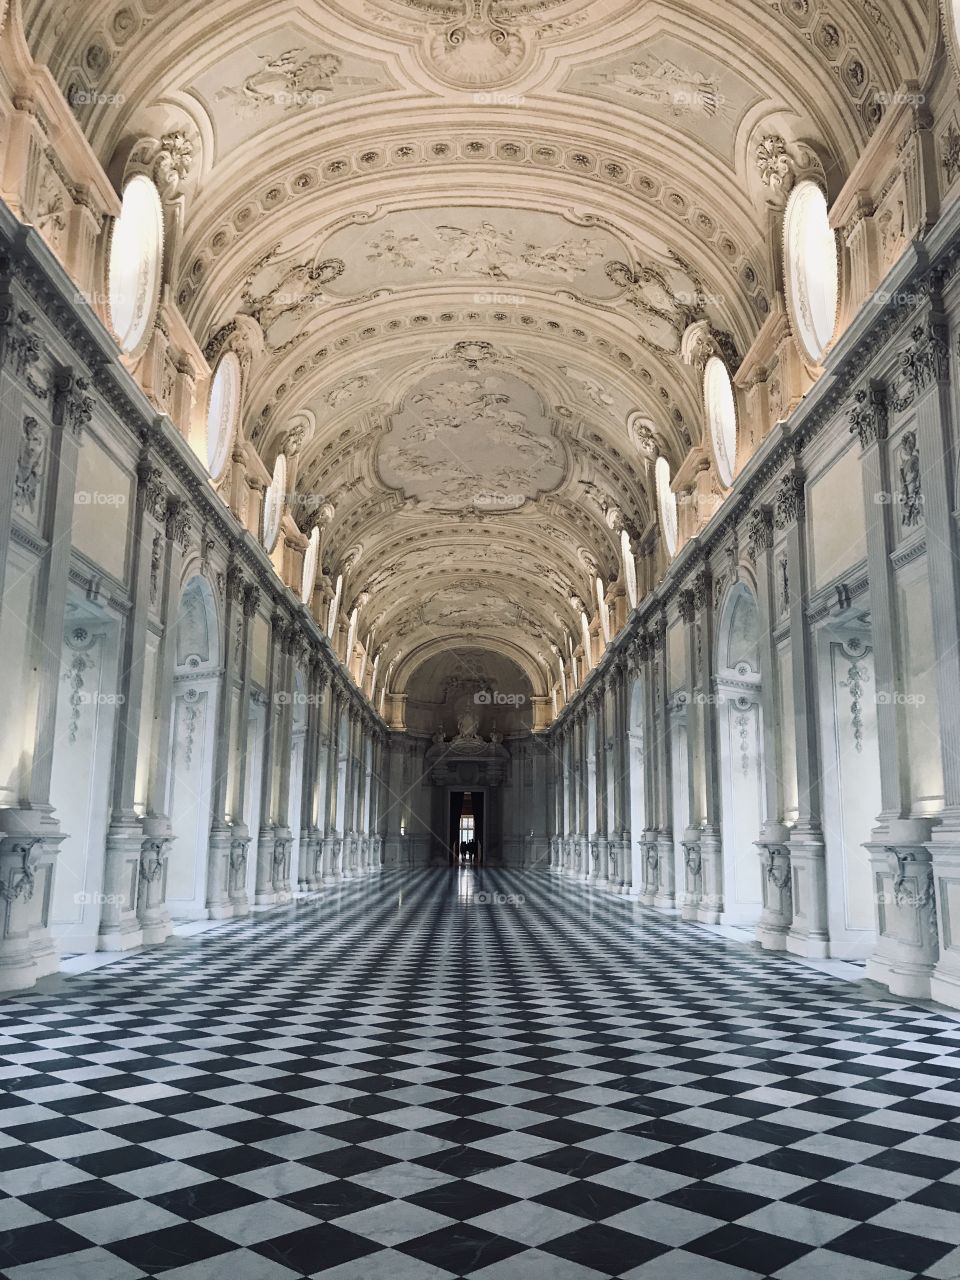 Interior main room of the Reggia di Venaria, Venaria Reale, Torino